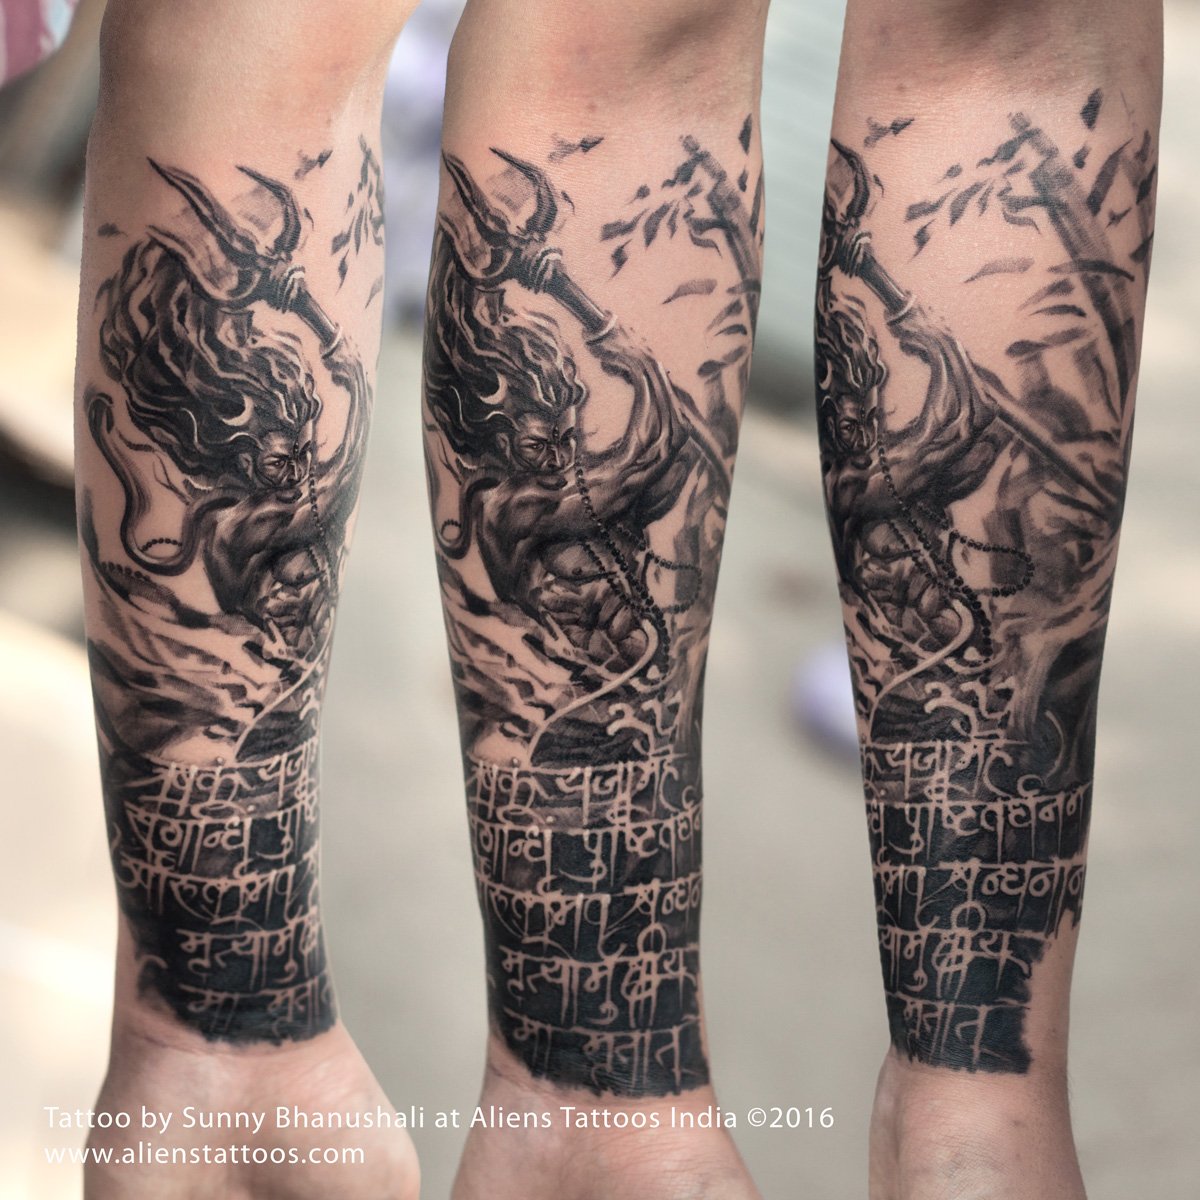 Tattoo uploaded by Samurai Tattoo mehsana • Mahadev tattoo |Shiva tattoo  |Bholenath tattoo |Lord shiva tattoo • Tattoodo